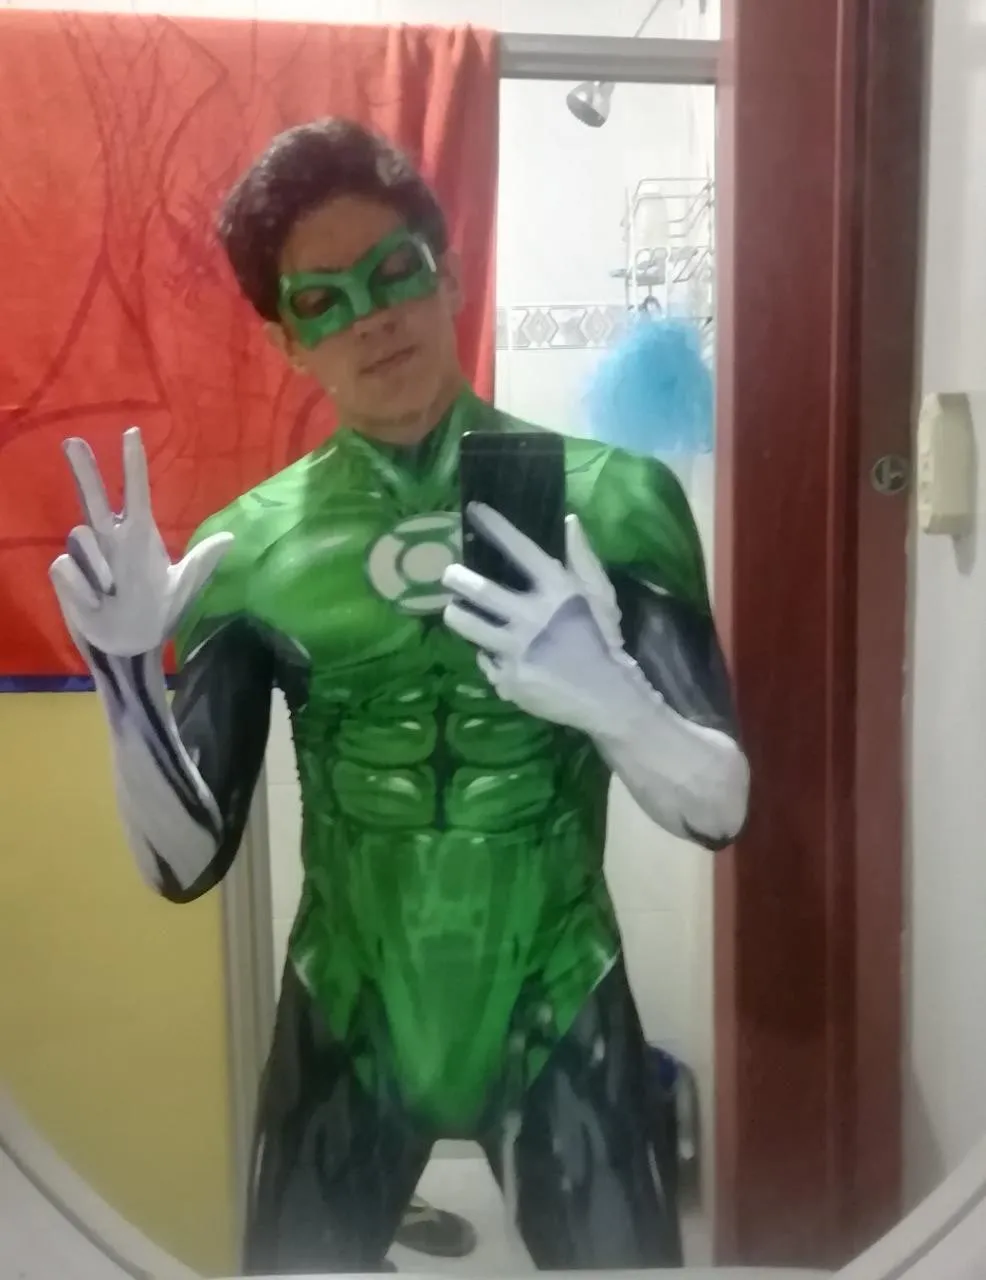 3D adultes imprimés enfants enfants lanterne super-héros cosplay costumes Zentai Halloween Party BodySuit